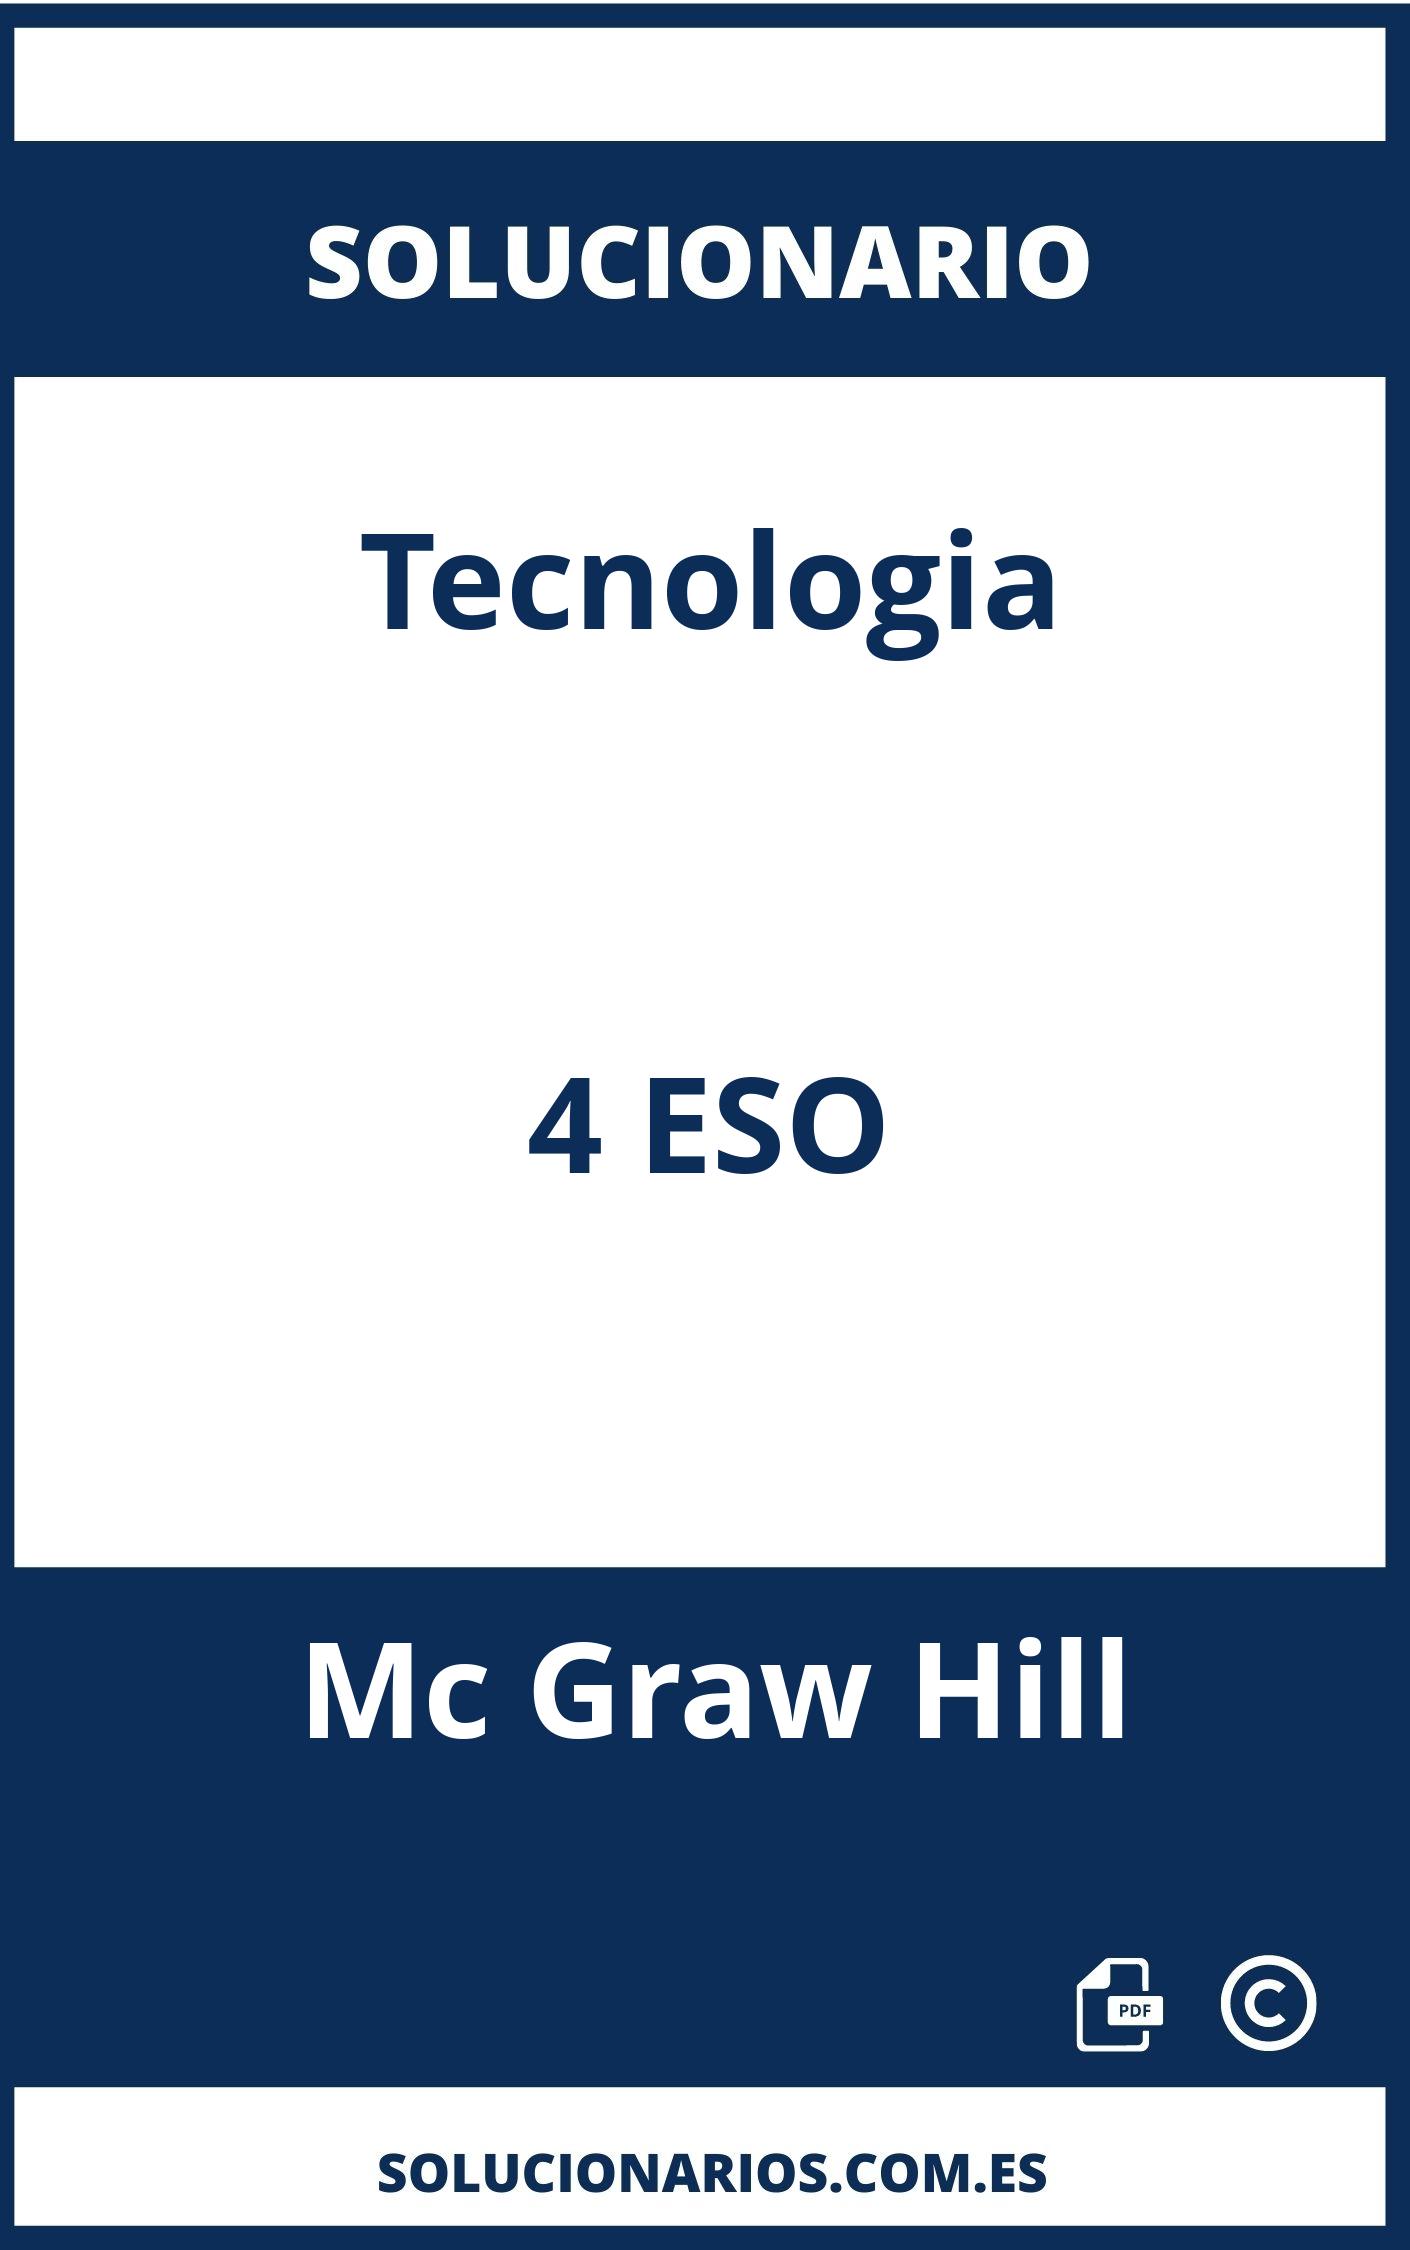 Solucionario Tecnologia 4 ESO Mc Graw Hill